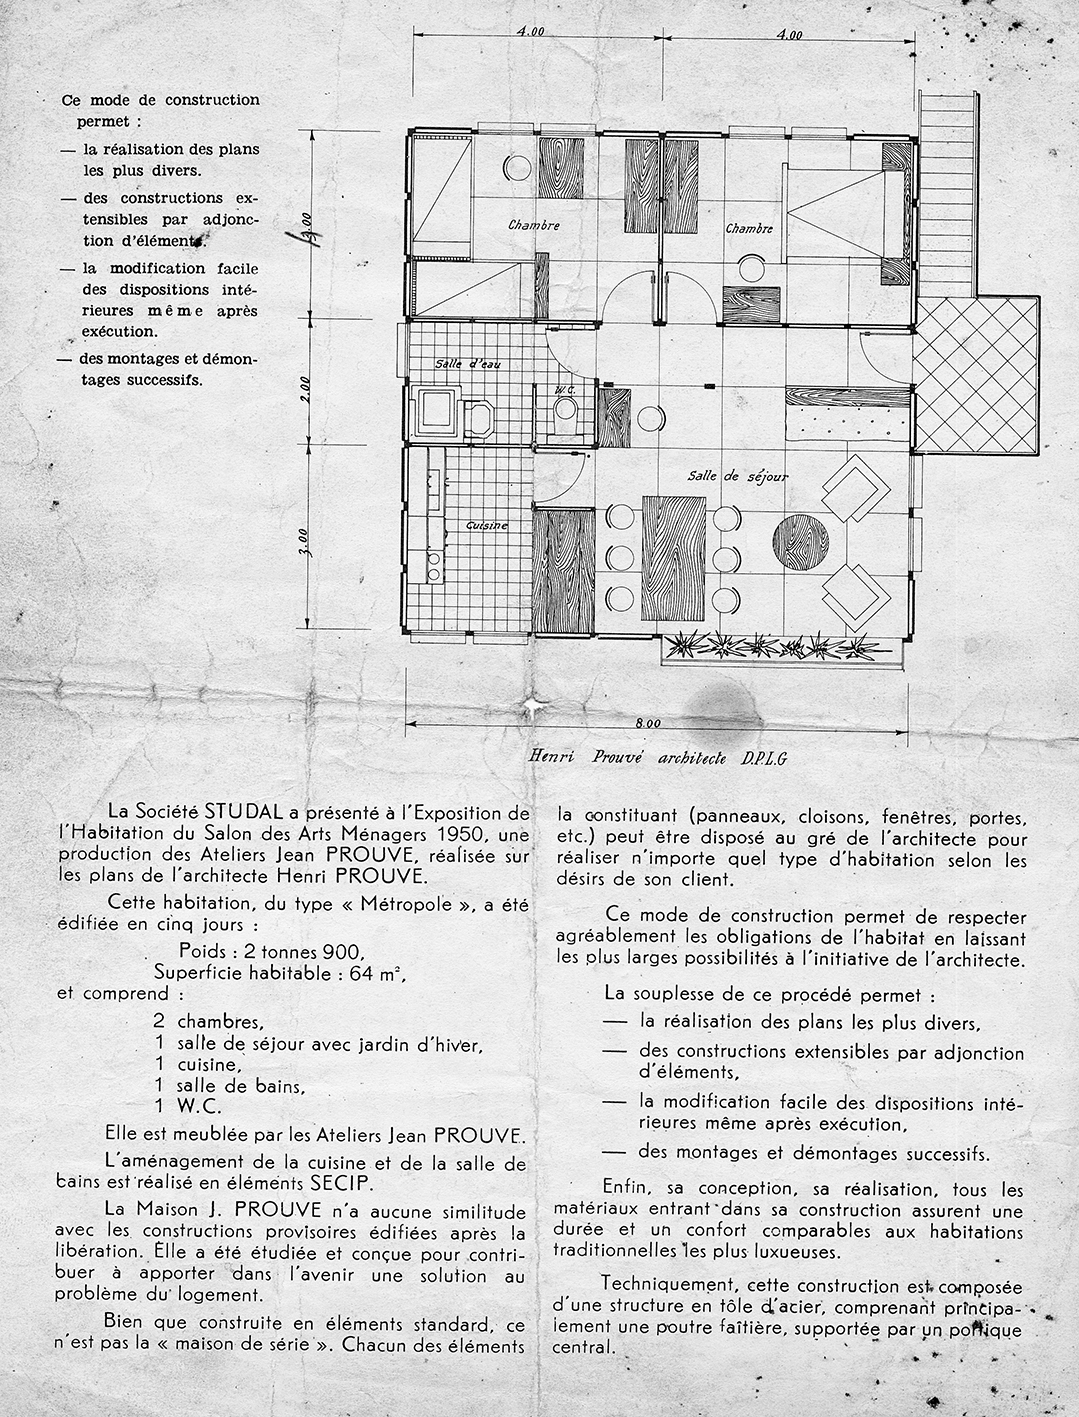 “The Prouvé House”. Advertising brochure for the Ateliers Jean Prouvé, Studal, Paris, ca. 1950.